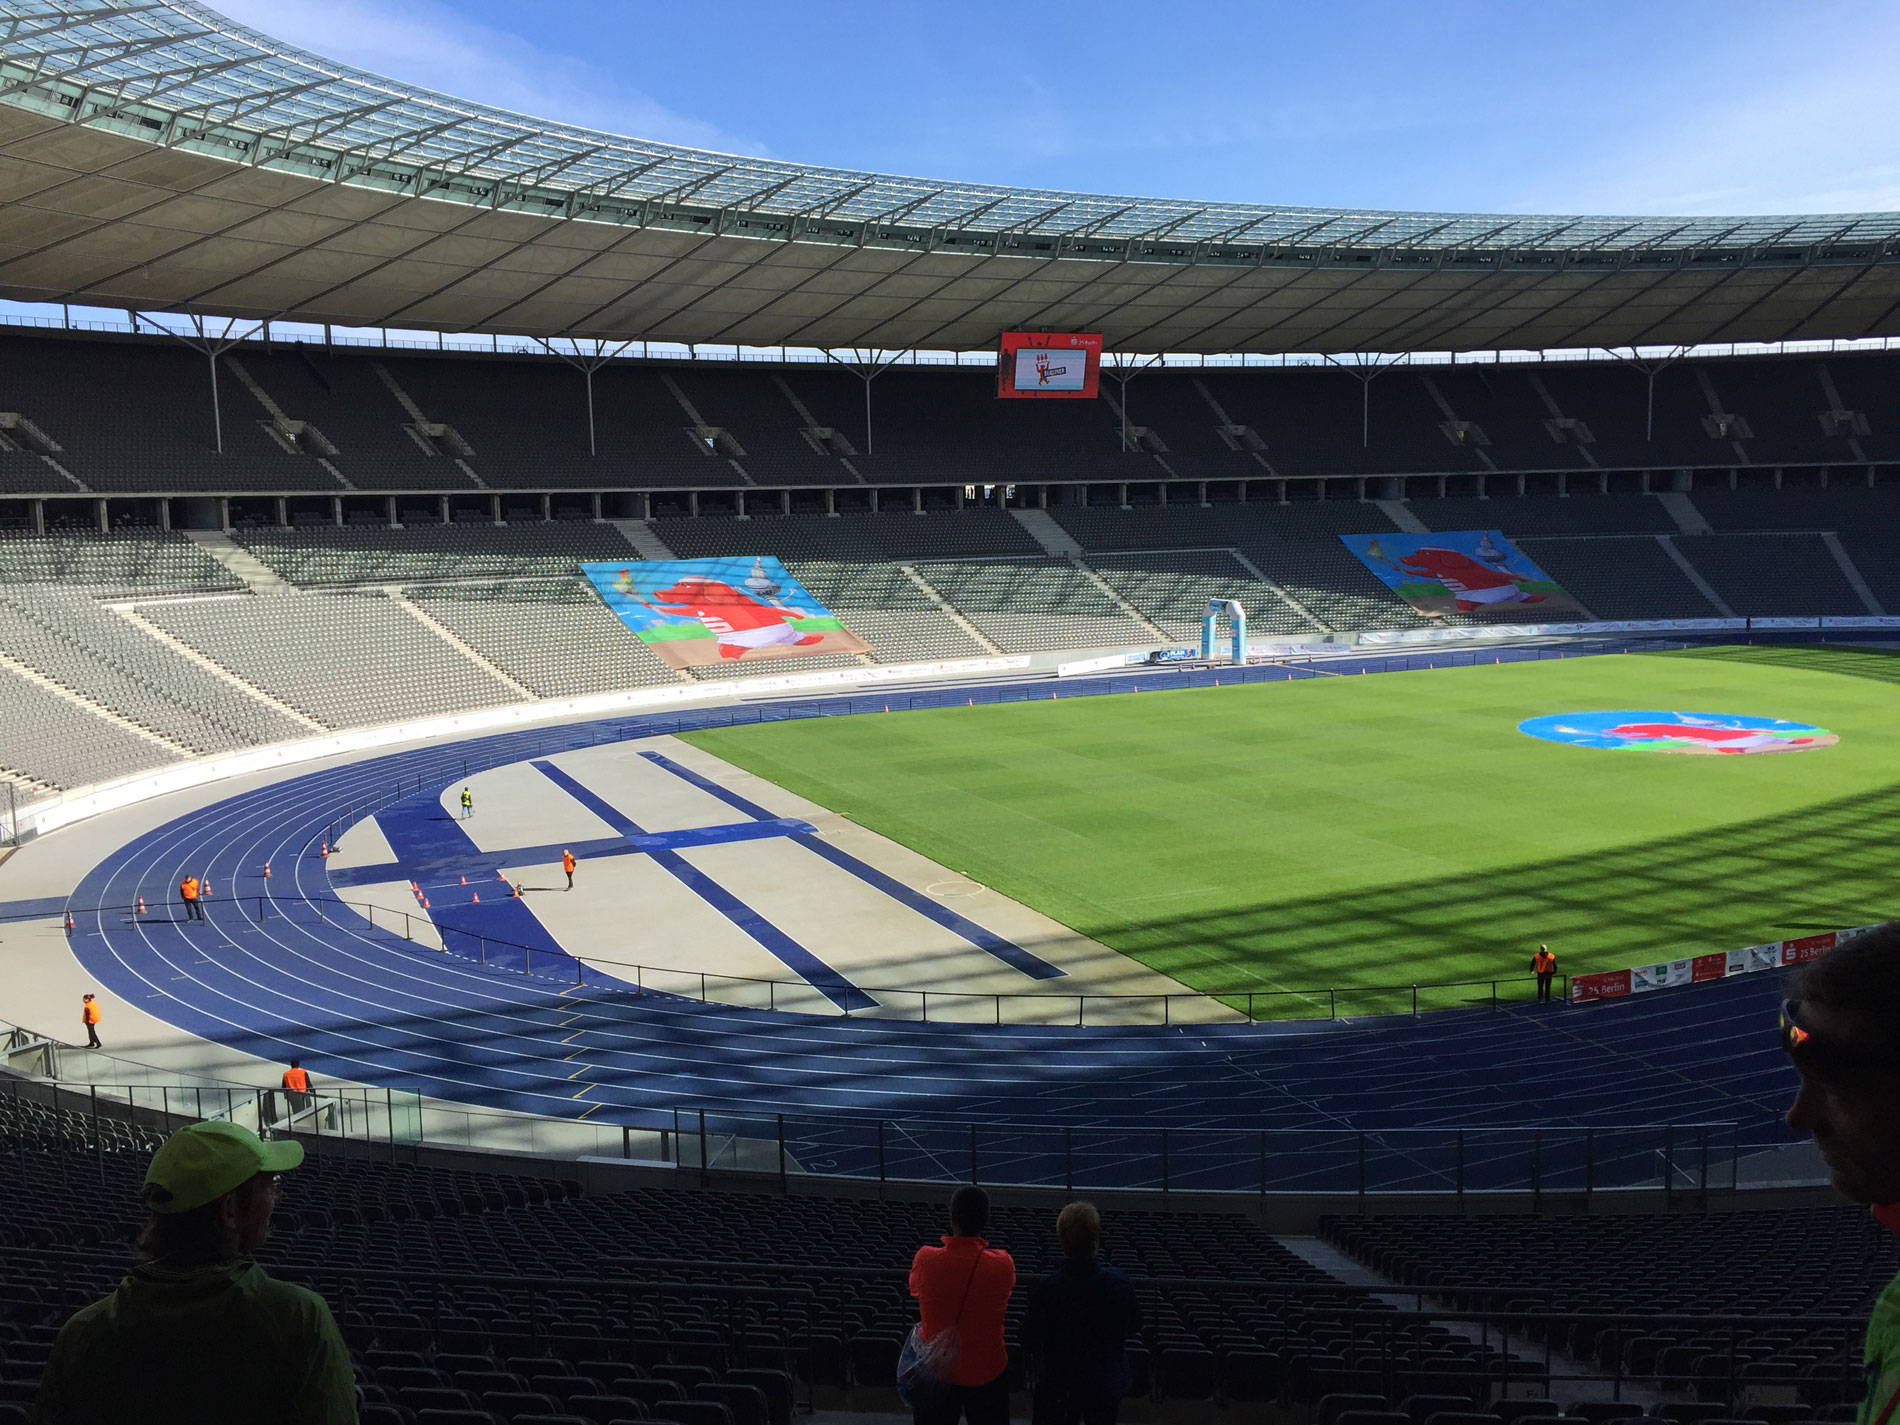 Das Olympiastadion in Berlin: Laufreise zum Berlinmarathon und Halbmarathon